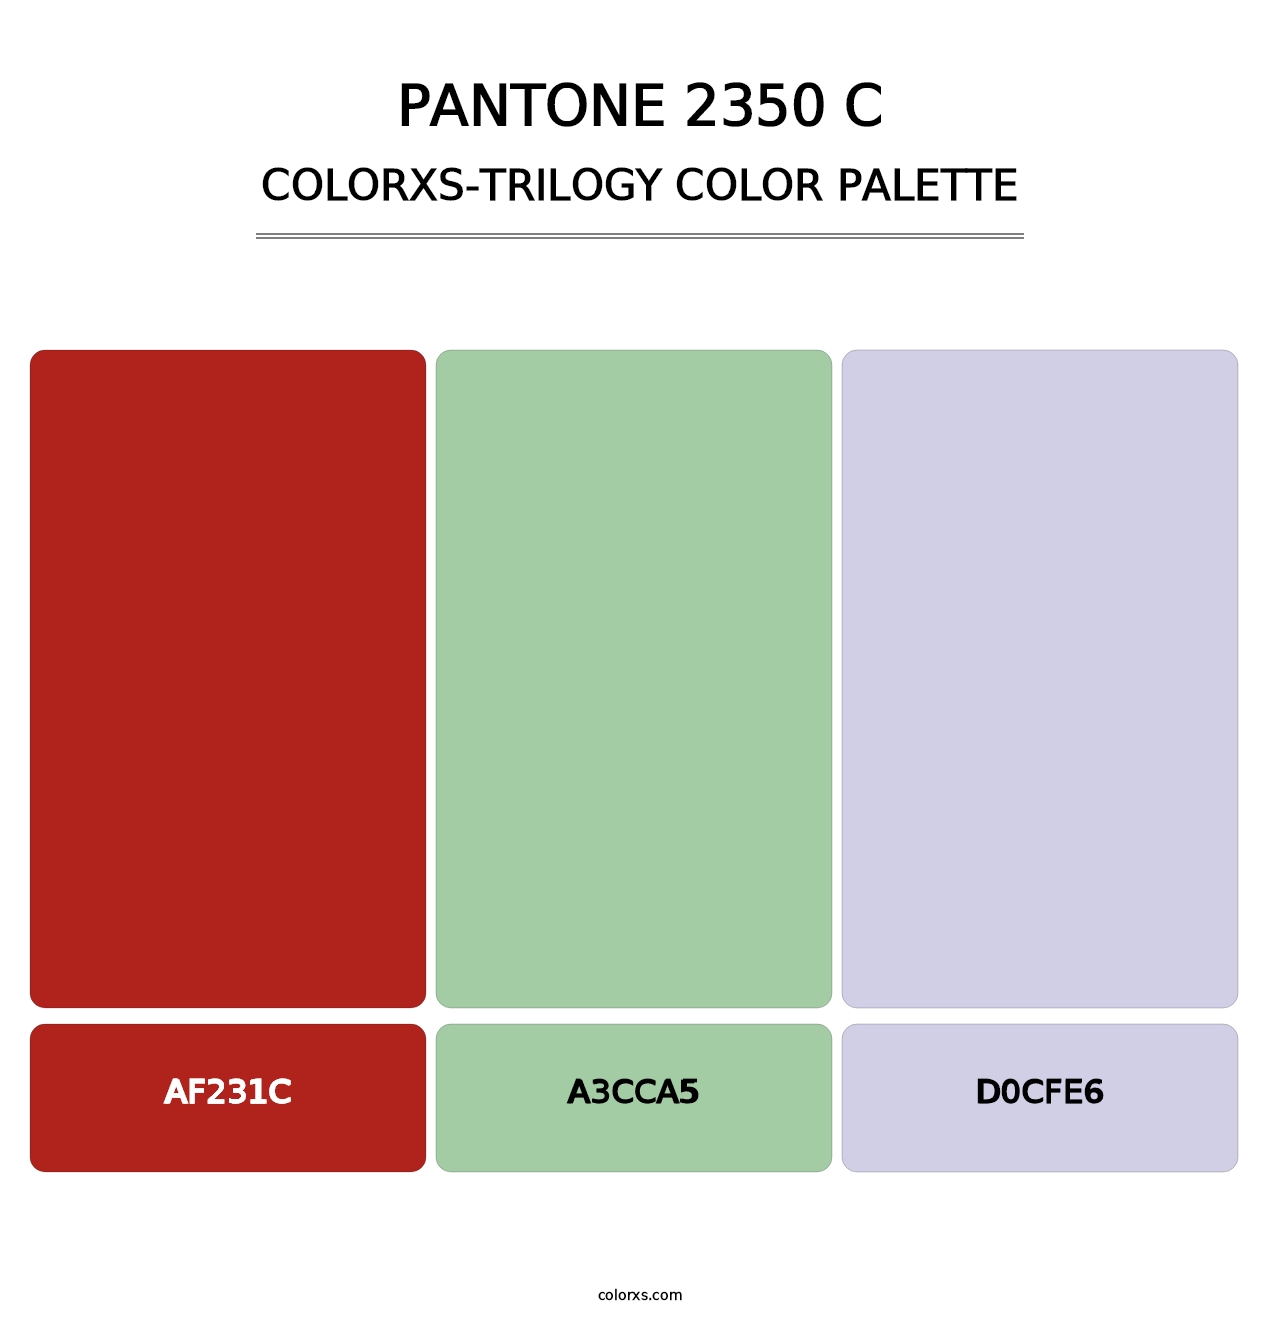 PANTONE 2350 C - Colorxs Trilogy Palette